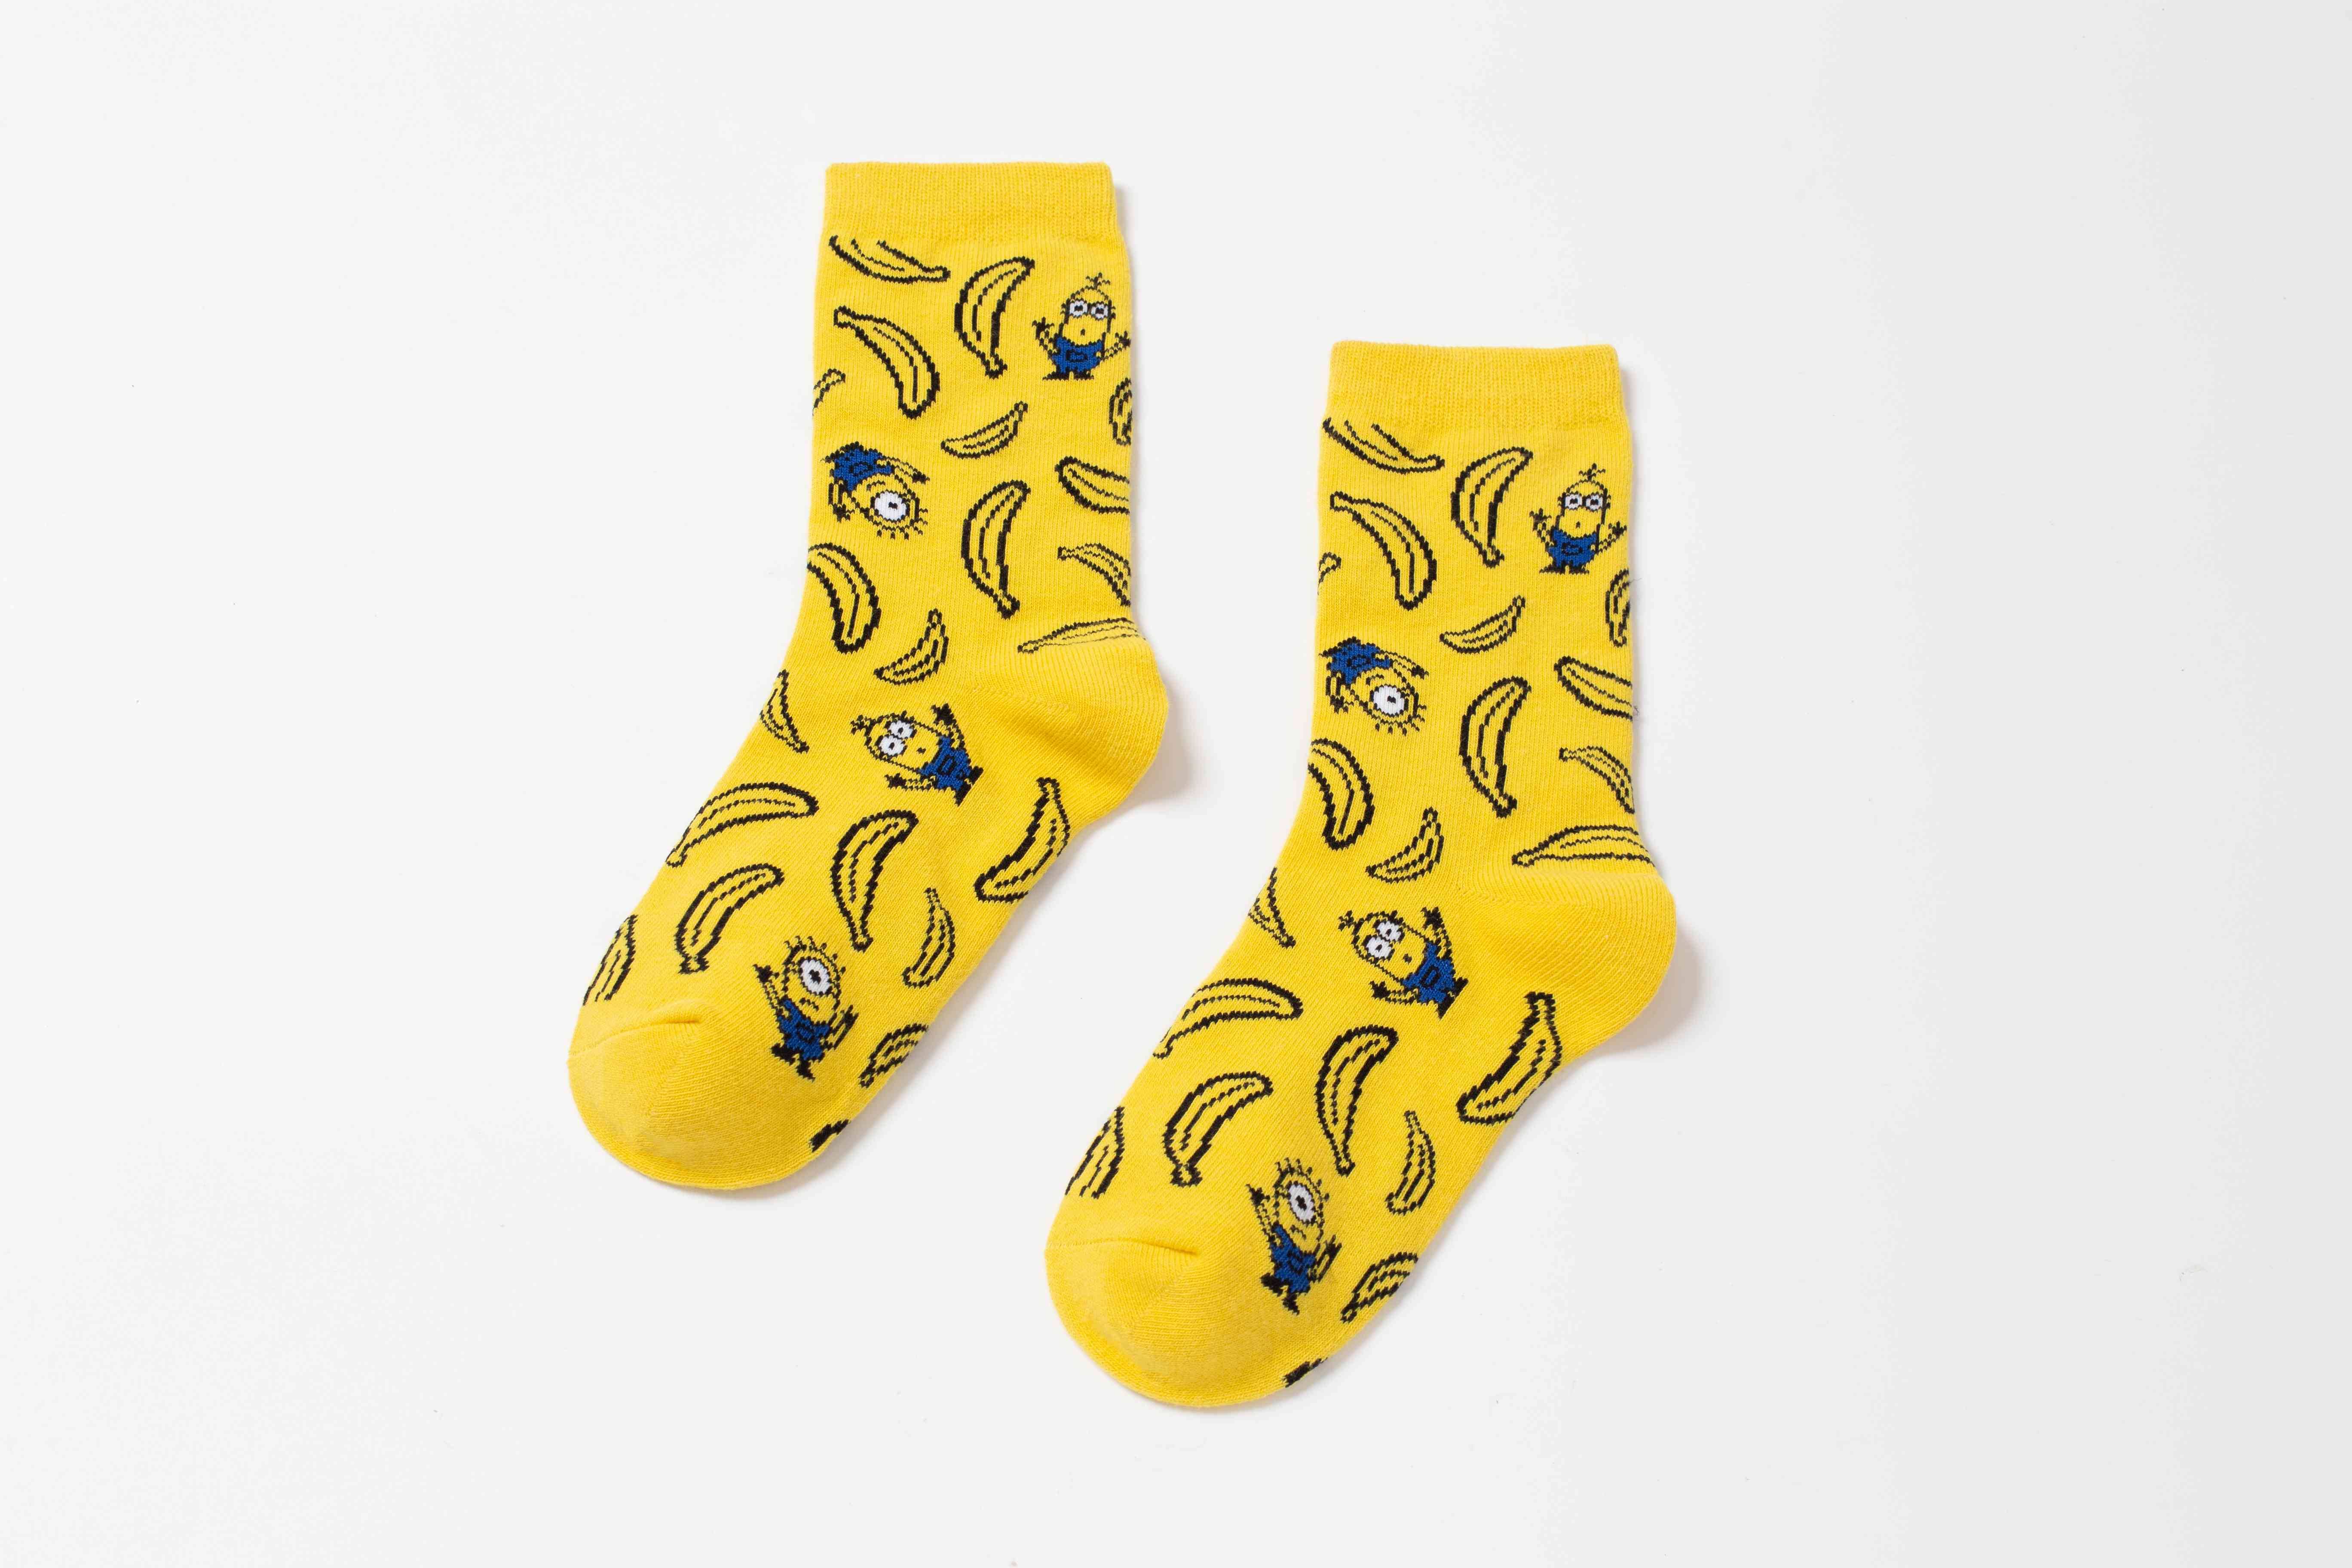 Bossini 織花襪「迷你兵團」及香蕉圖案